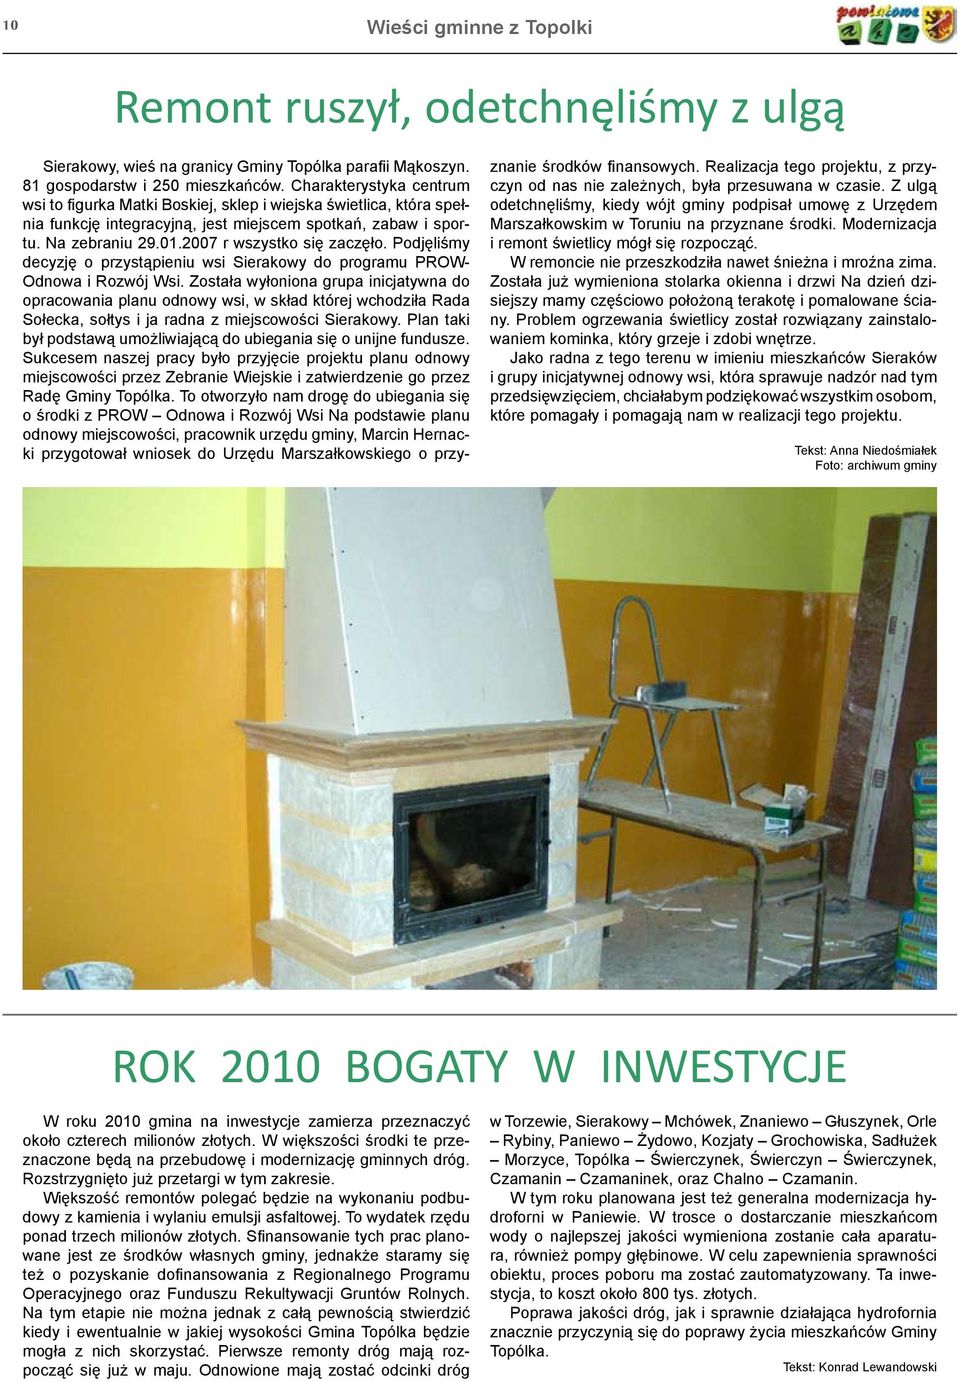 2007 r wszystko się zaczęło. Podjęliśmy decyzję o przystąpieniu wsi Sierakowy do programu PROW- Odnowa i Rozwój Wsi.